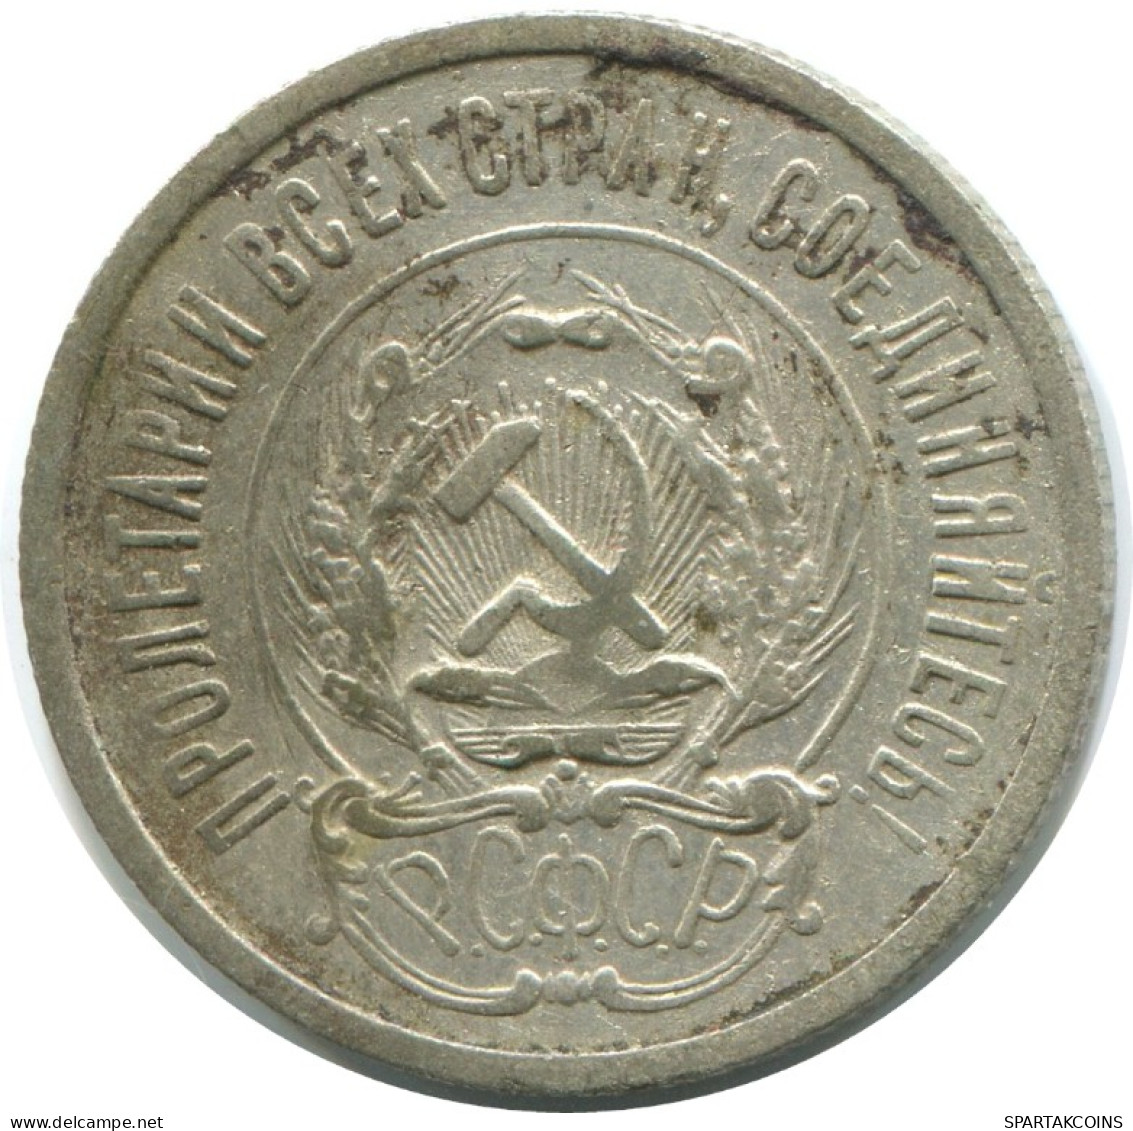 20 KOPEKS 1923 RUSSIA RSFSR SILVER Coin HIGH GRADE #AF479.4.U.A - Russland